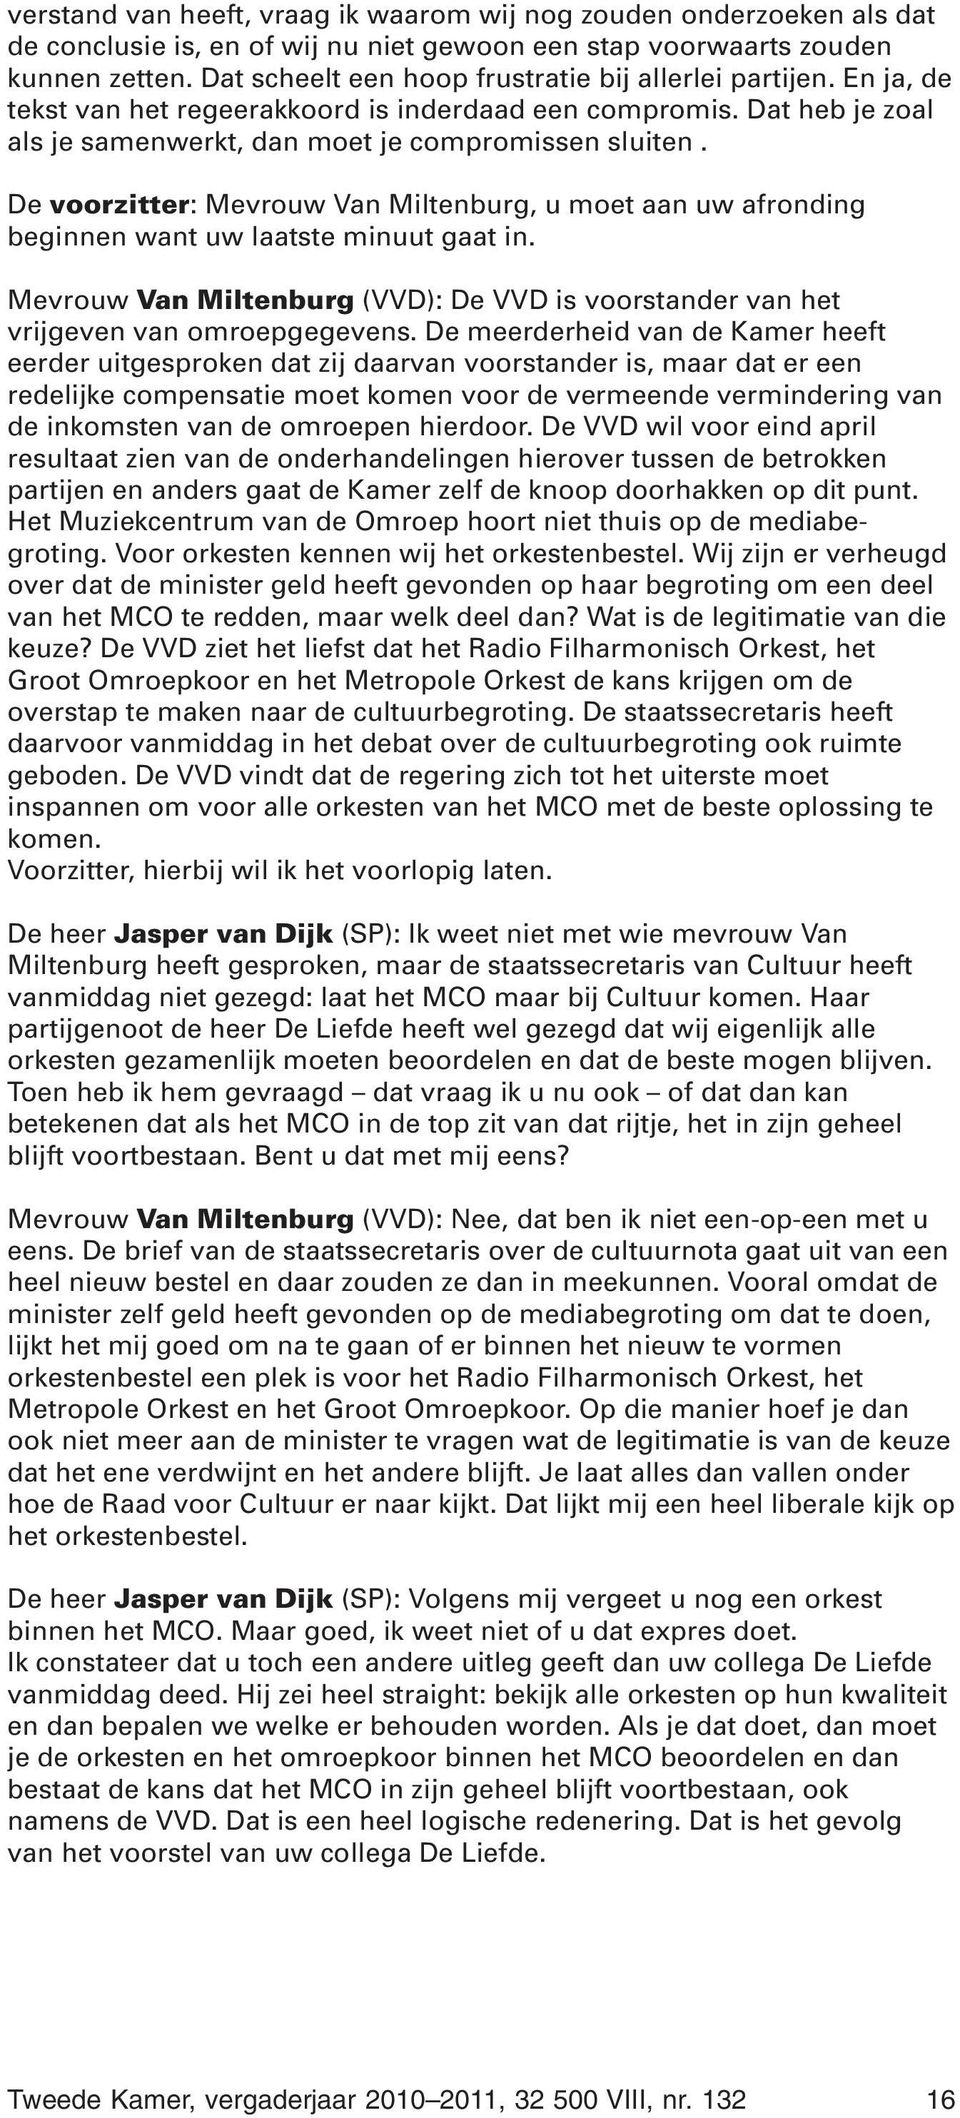 De voorzitter: Mevrouw Van Miltenburg, u moet aan uw afronding beginnen want uw laatste minuut gaat in. Mevrouw Van Miltenburg (VVD): De VVD is voorstander van het vrijgeven van omroepgegevens.